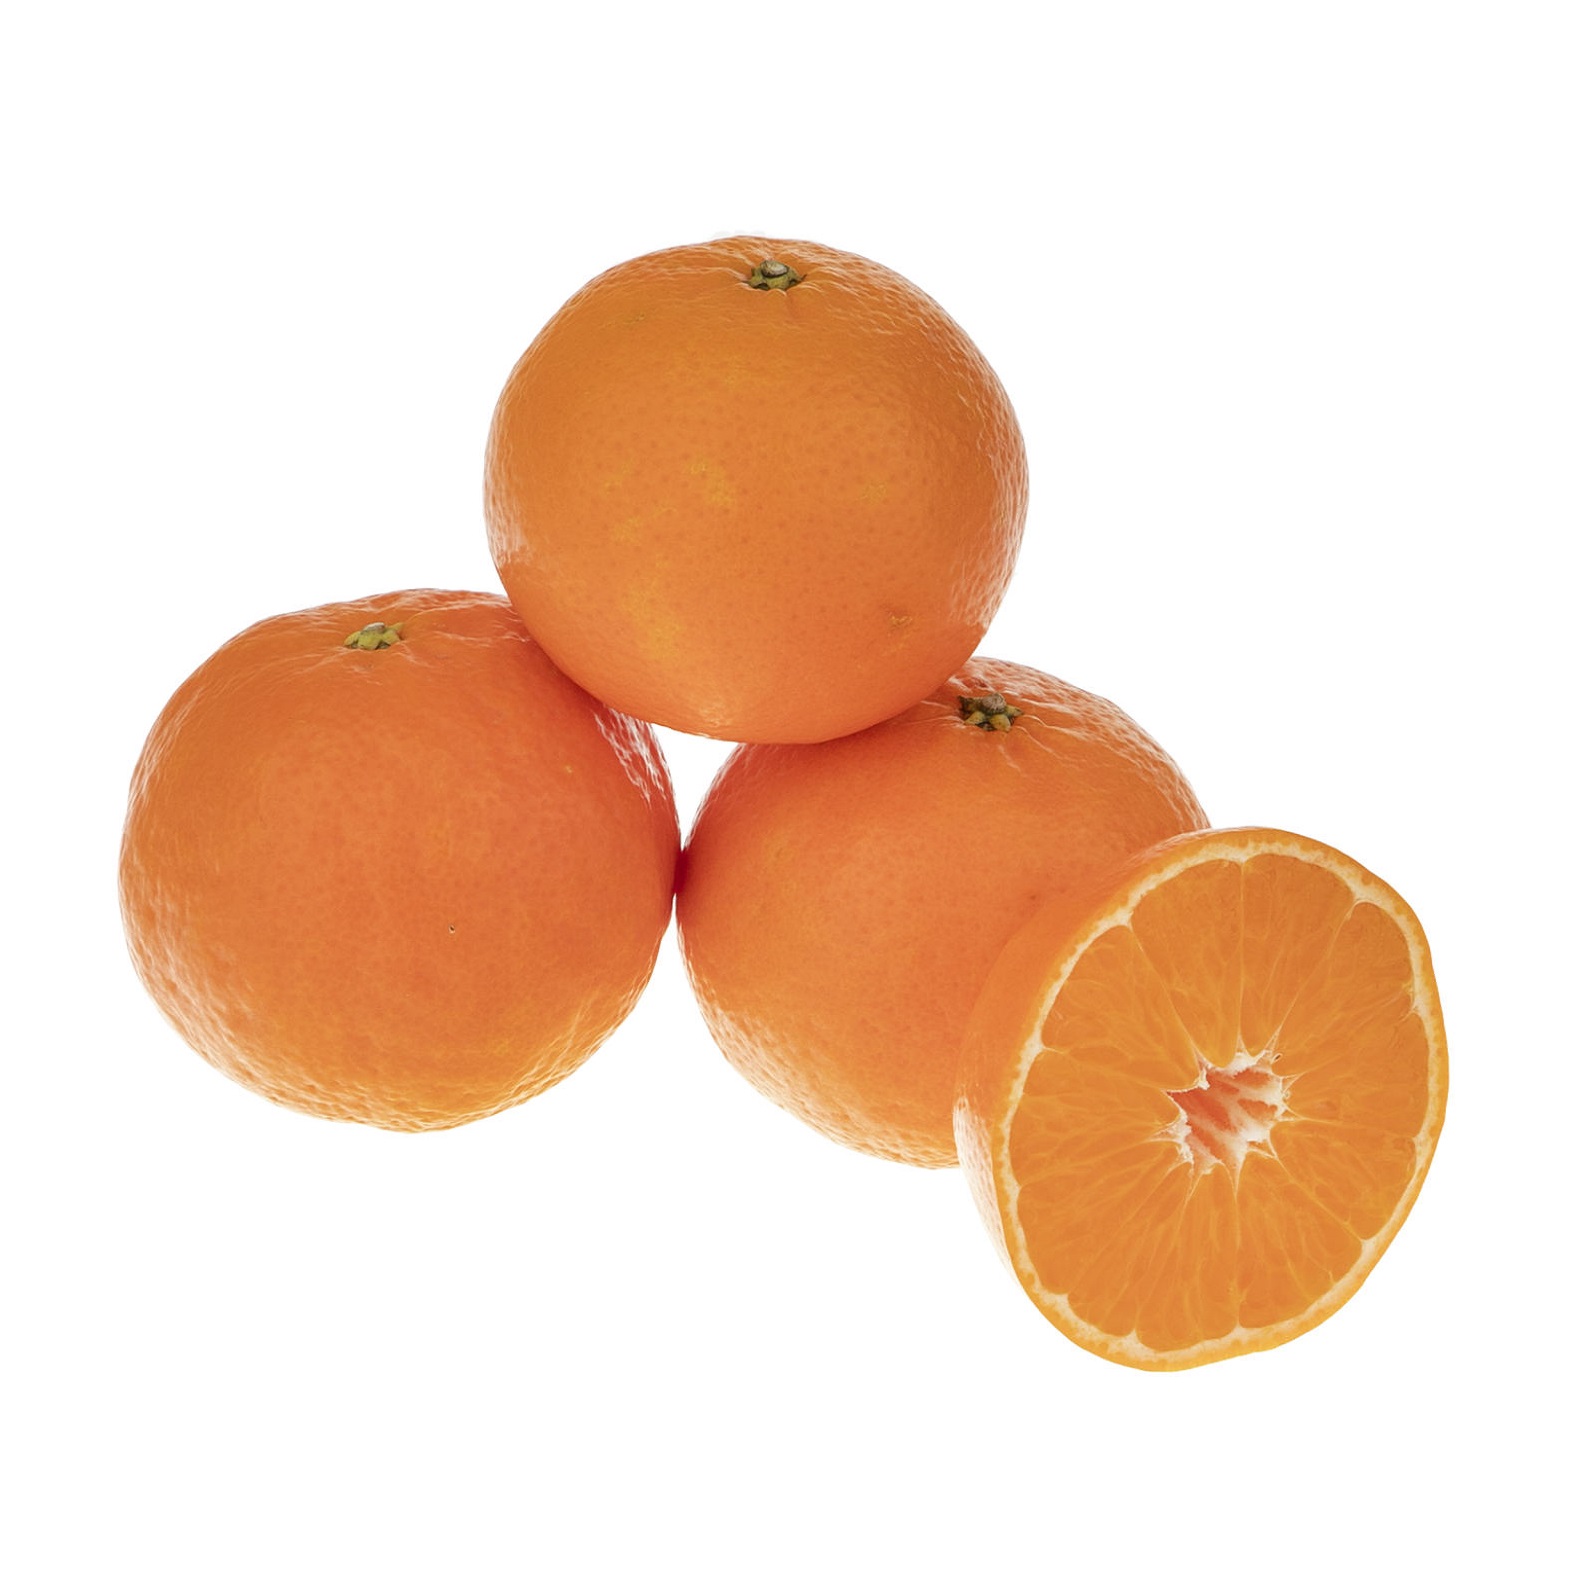 نارنگی پچ درجه یک - 5 کیلوگرم